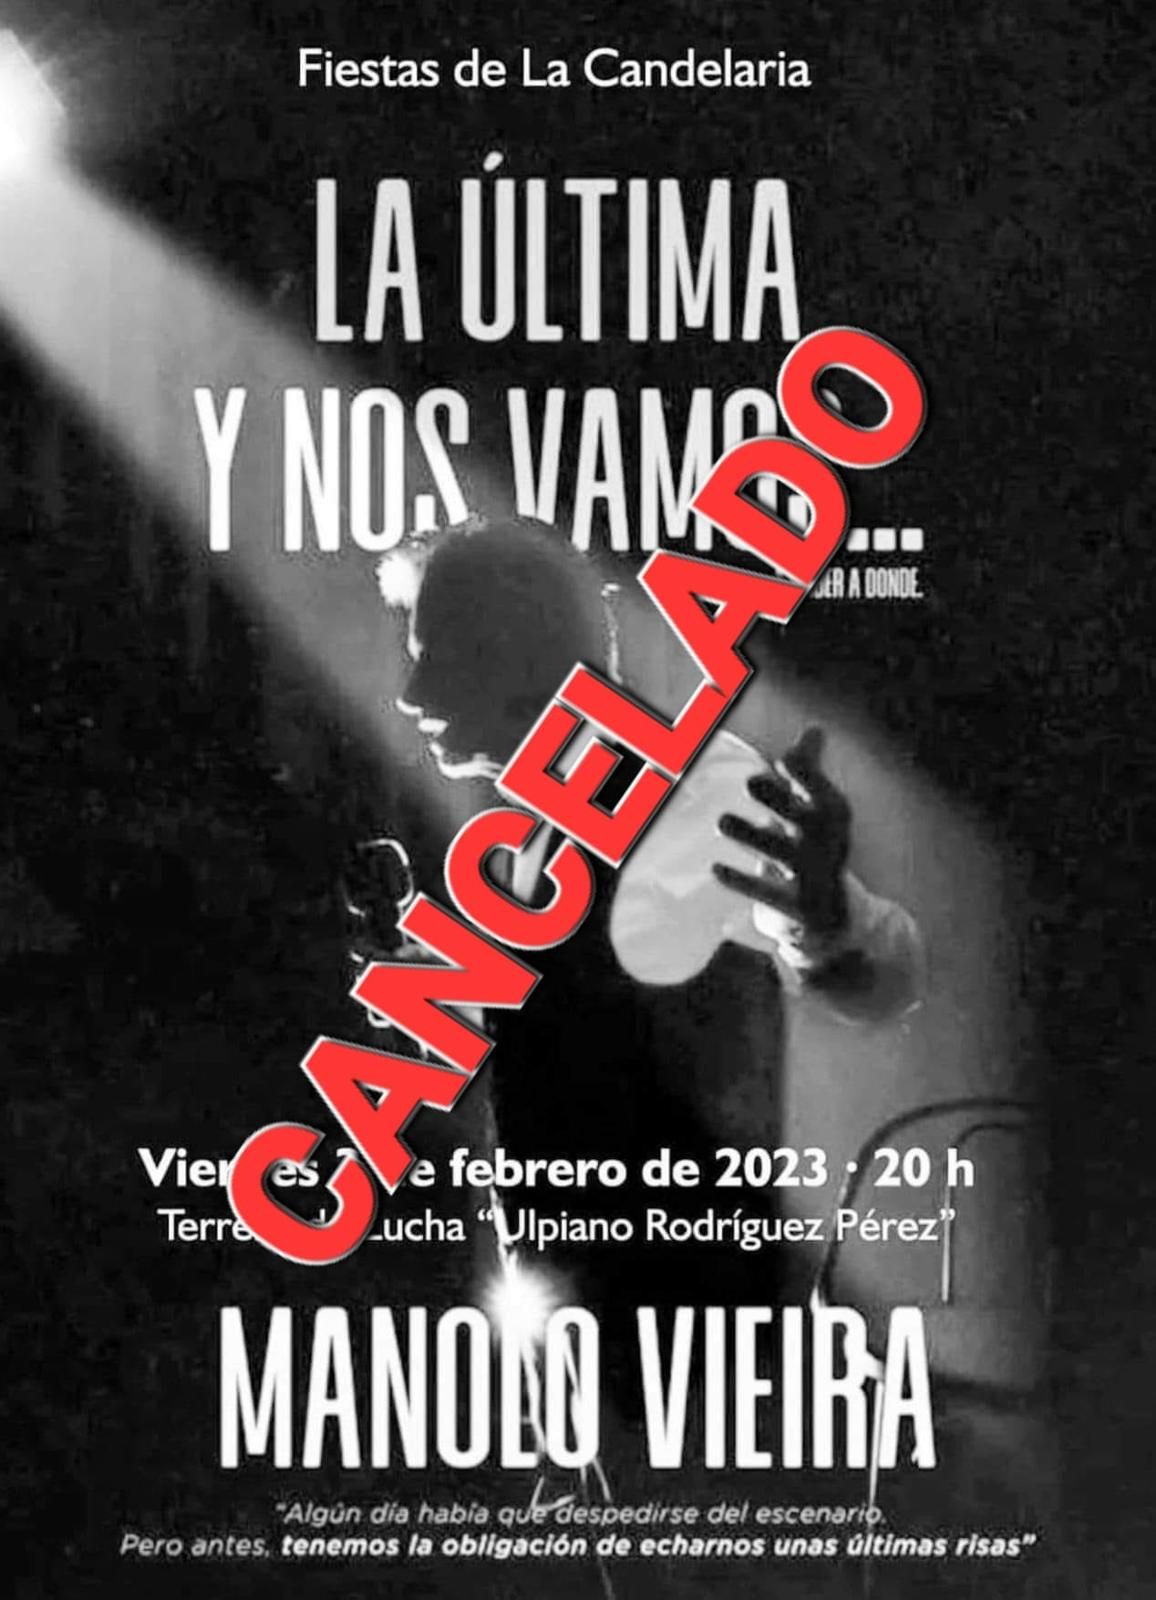 Cartel con la actuación cancelada del humorista Manolo Vieira en Tías prevista para este 3 de febrero de 2023.